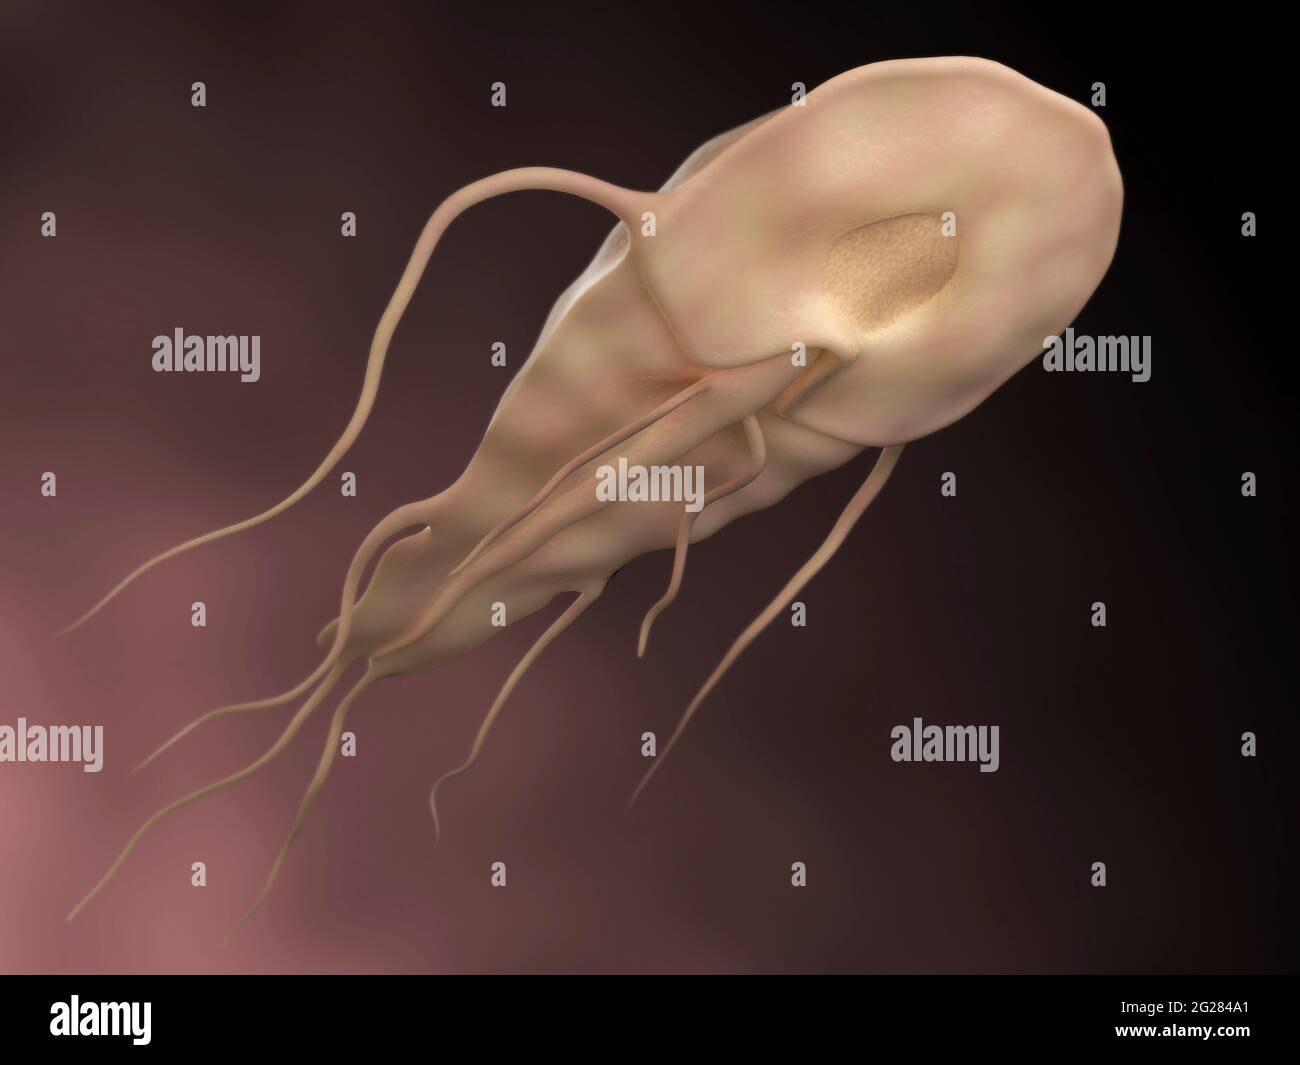 Ilustración biomédica del parásito Giardia. Foto de stock